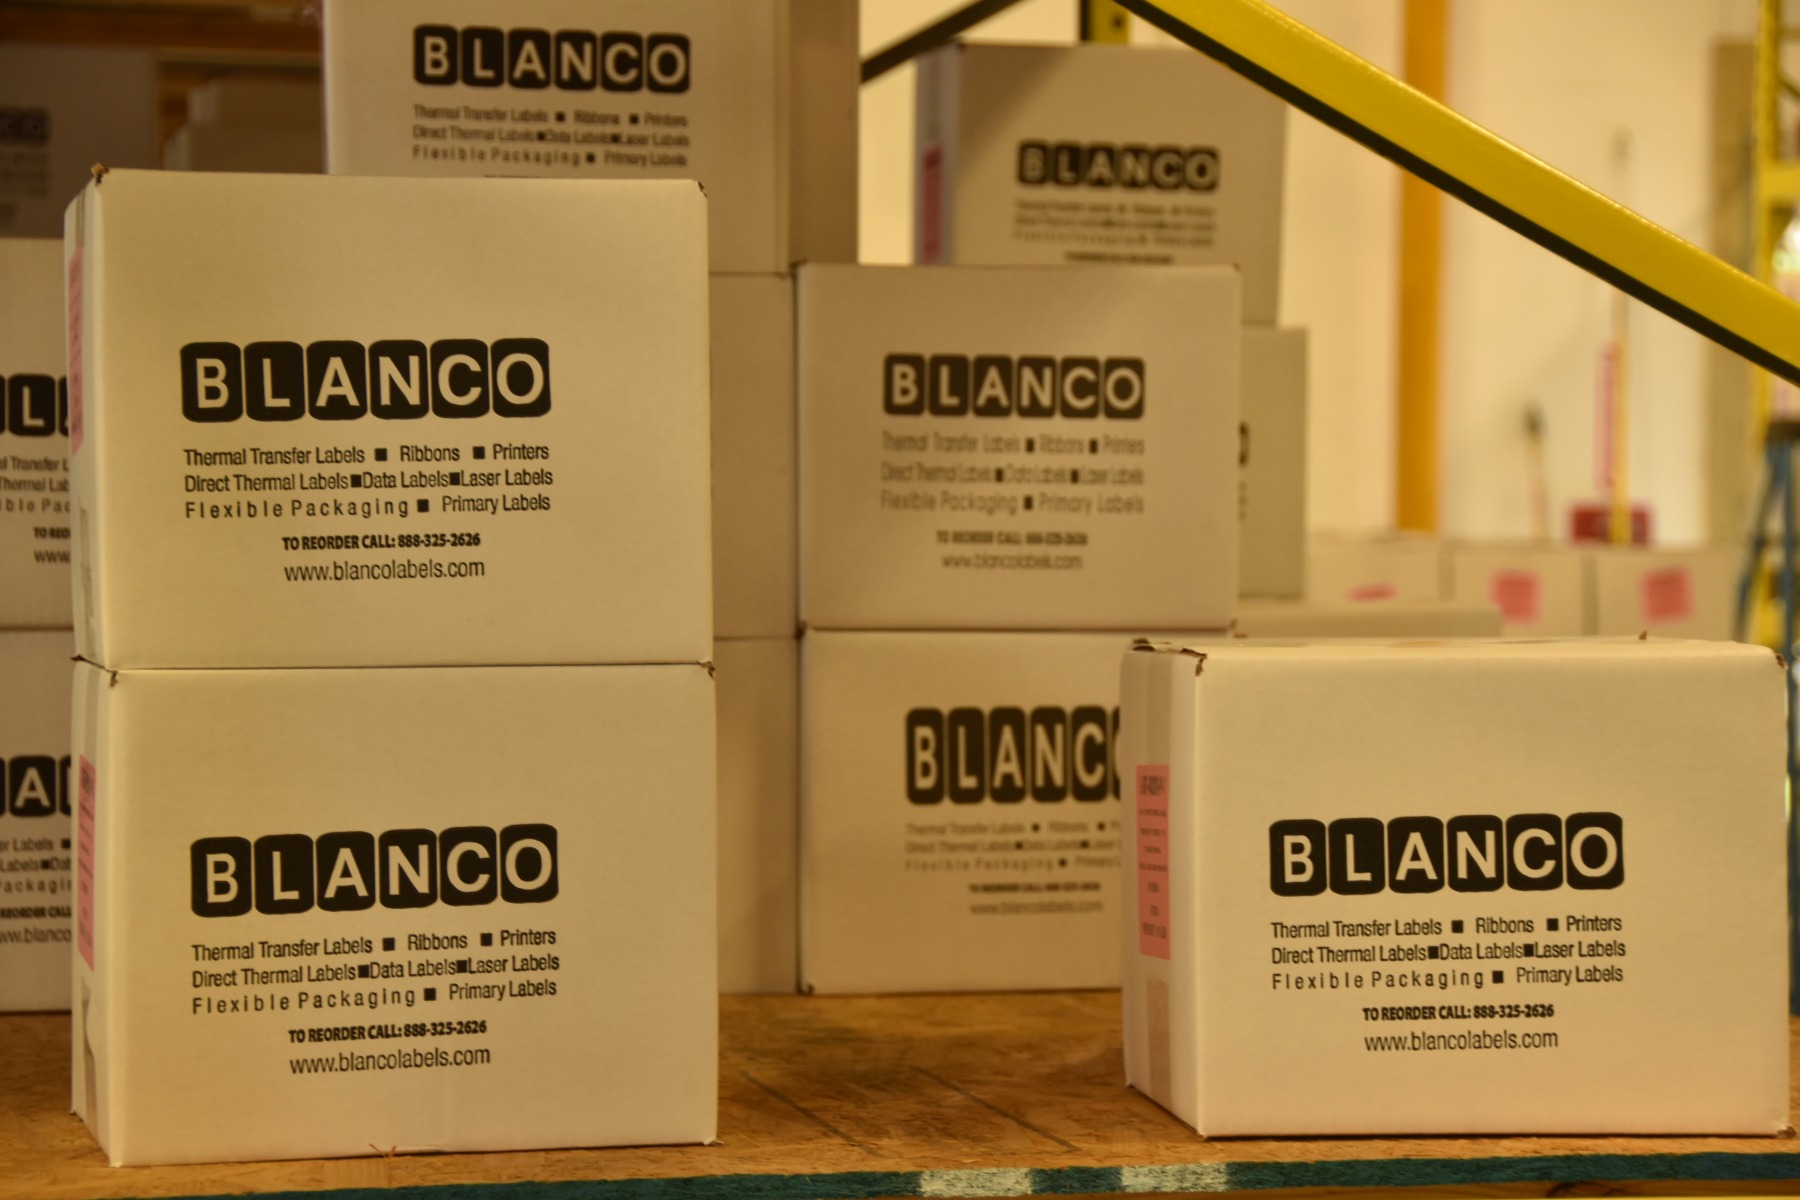 Blanco boxes